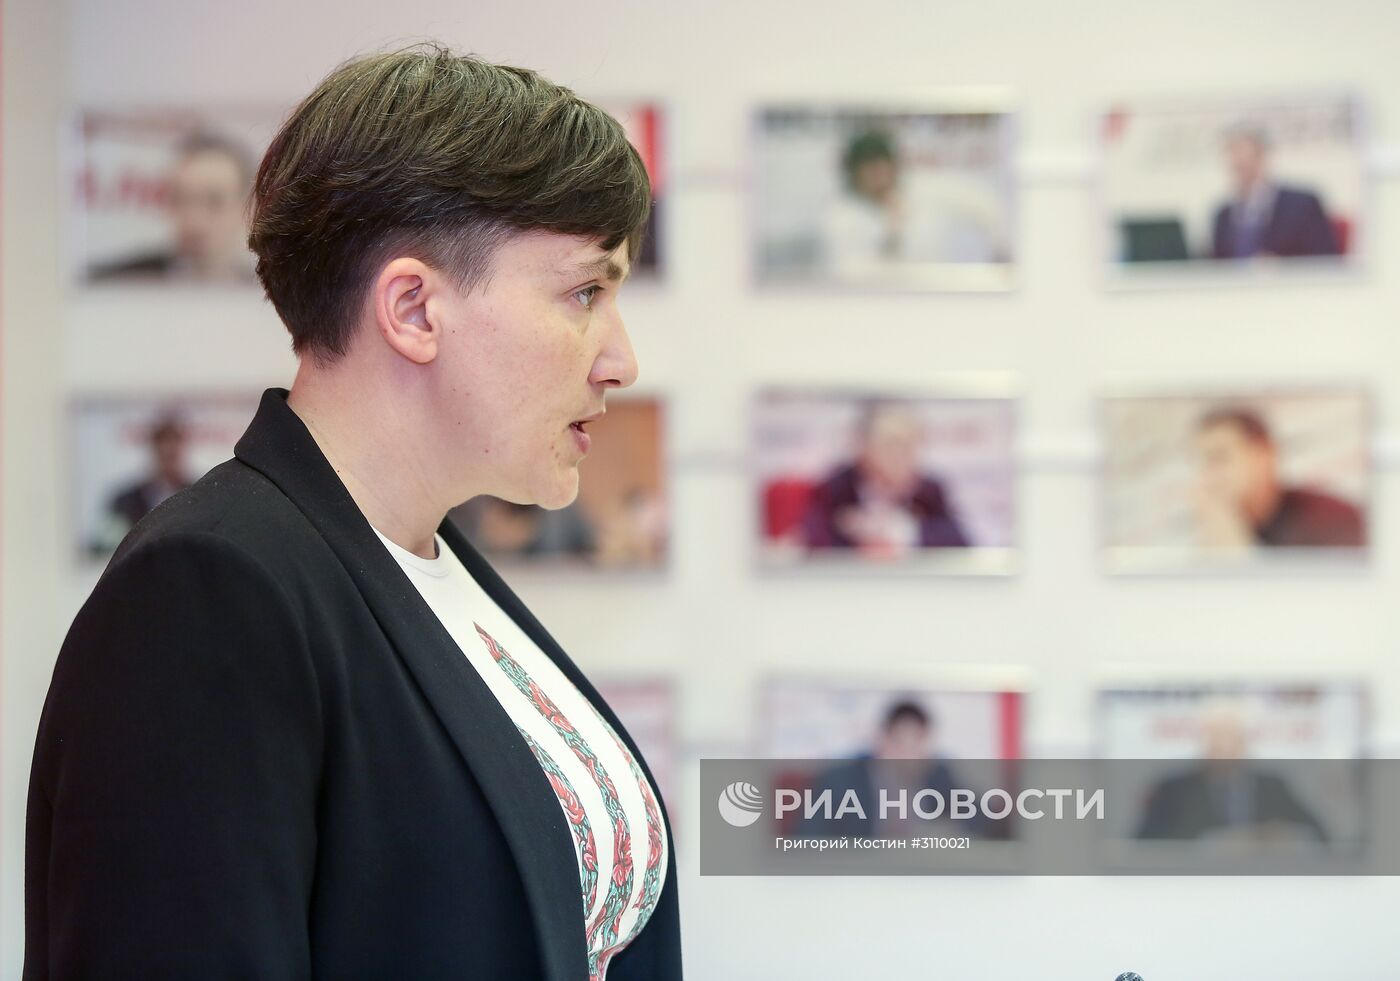 Пресс-конференция Надежды Савченко